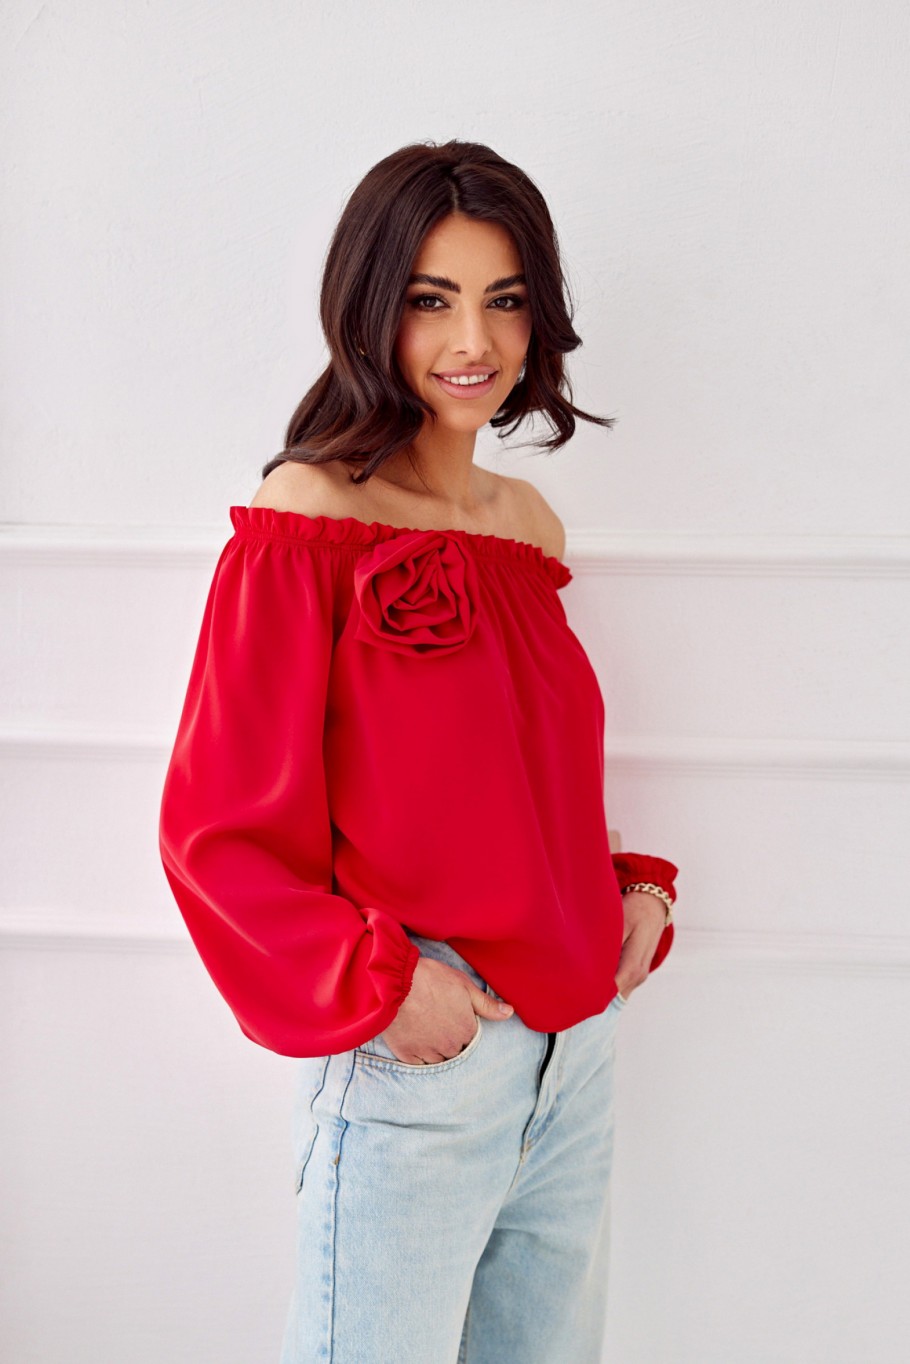 Rosie - Schulternahe Bluse mit langen Ärmeln und einer Rose CZE